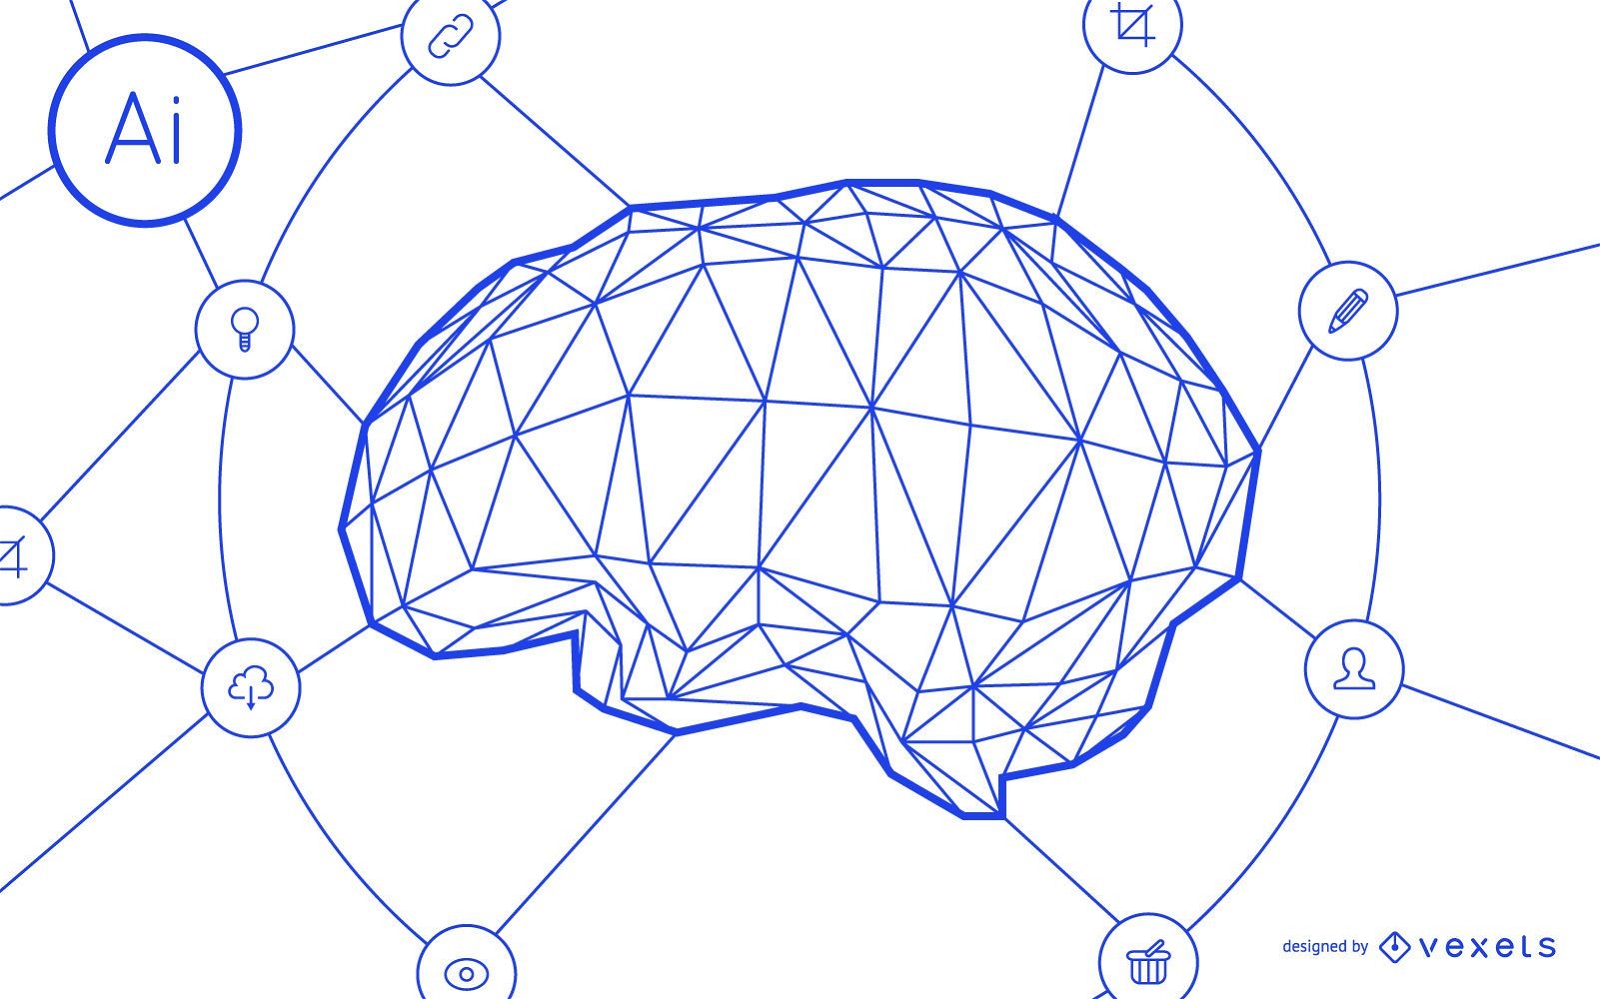 Gehirnnetzwerkdesign für künstliche Intelligenz